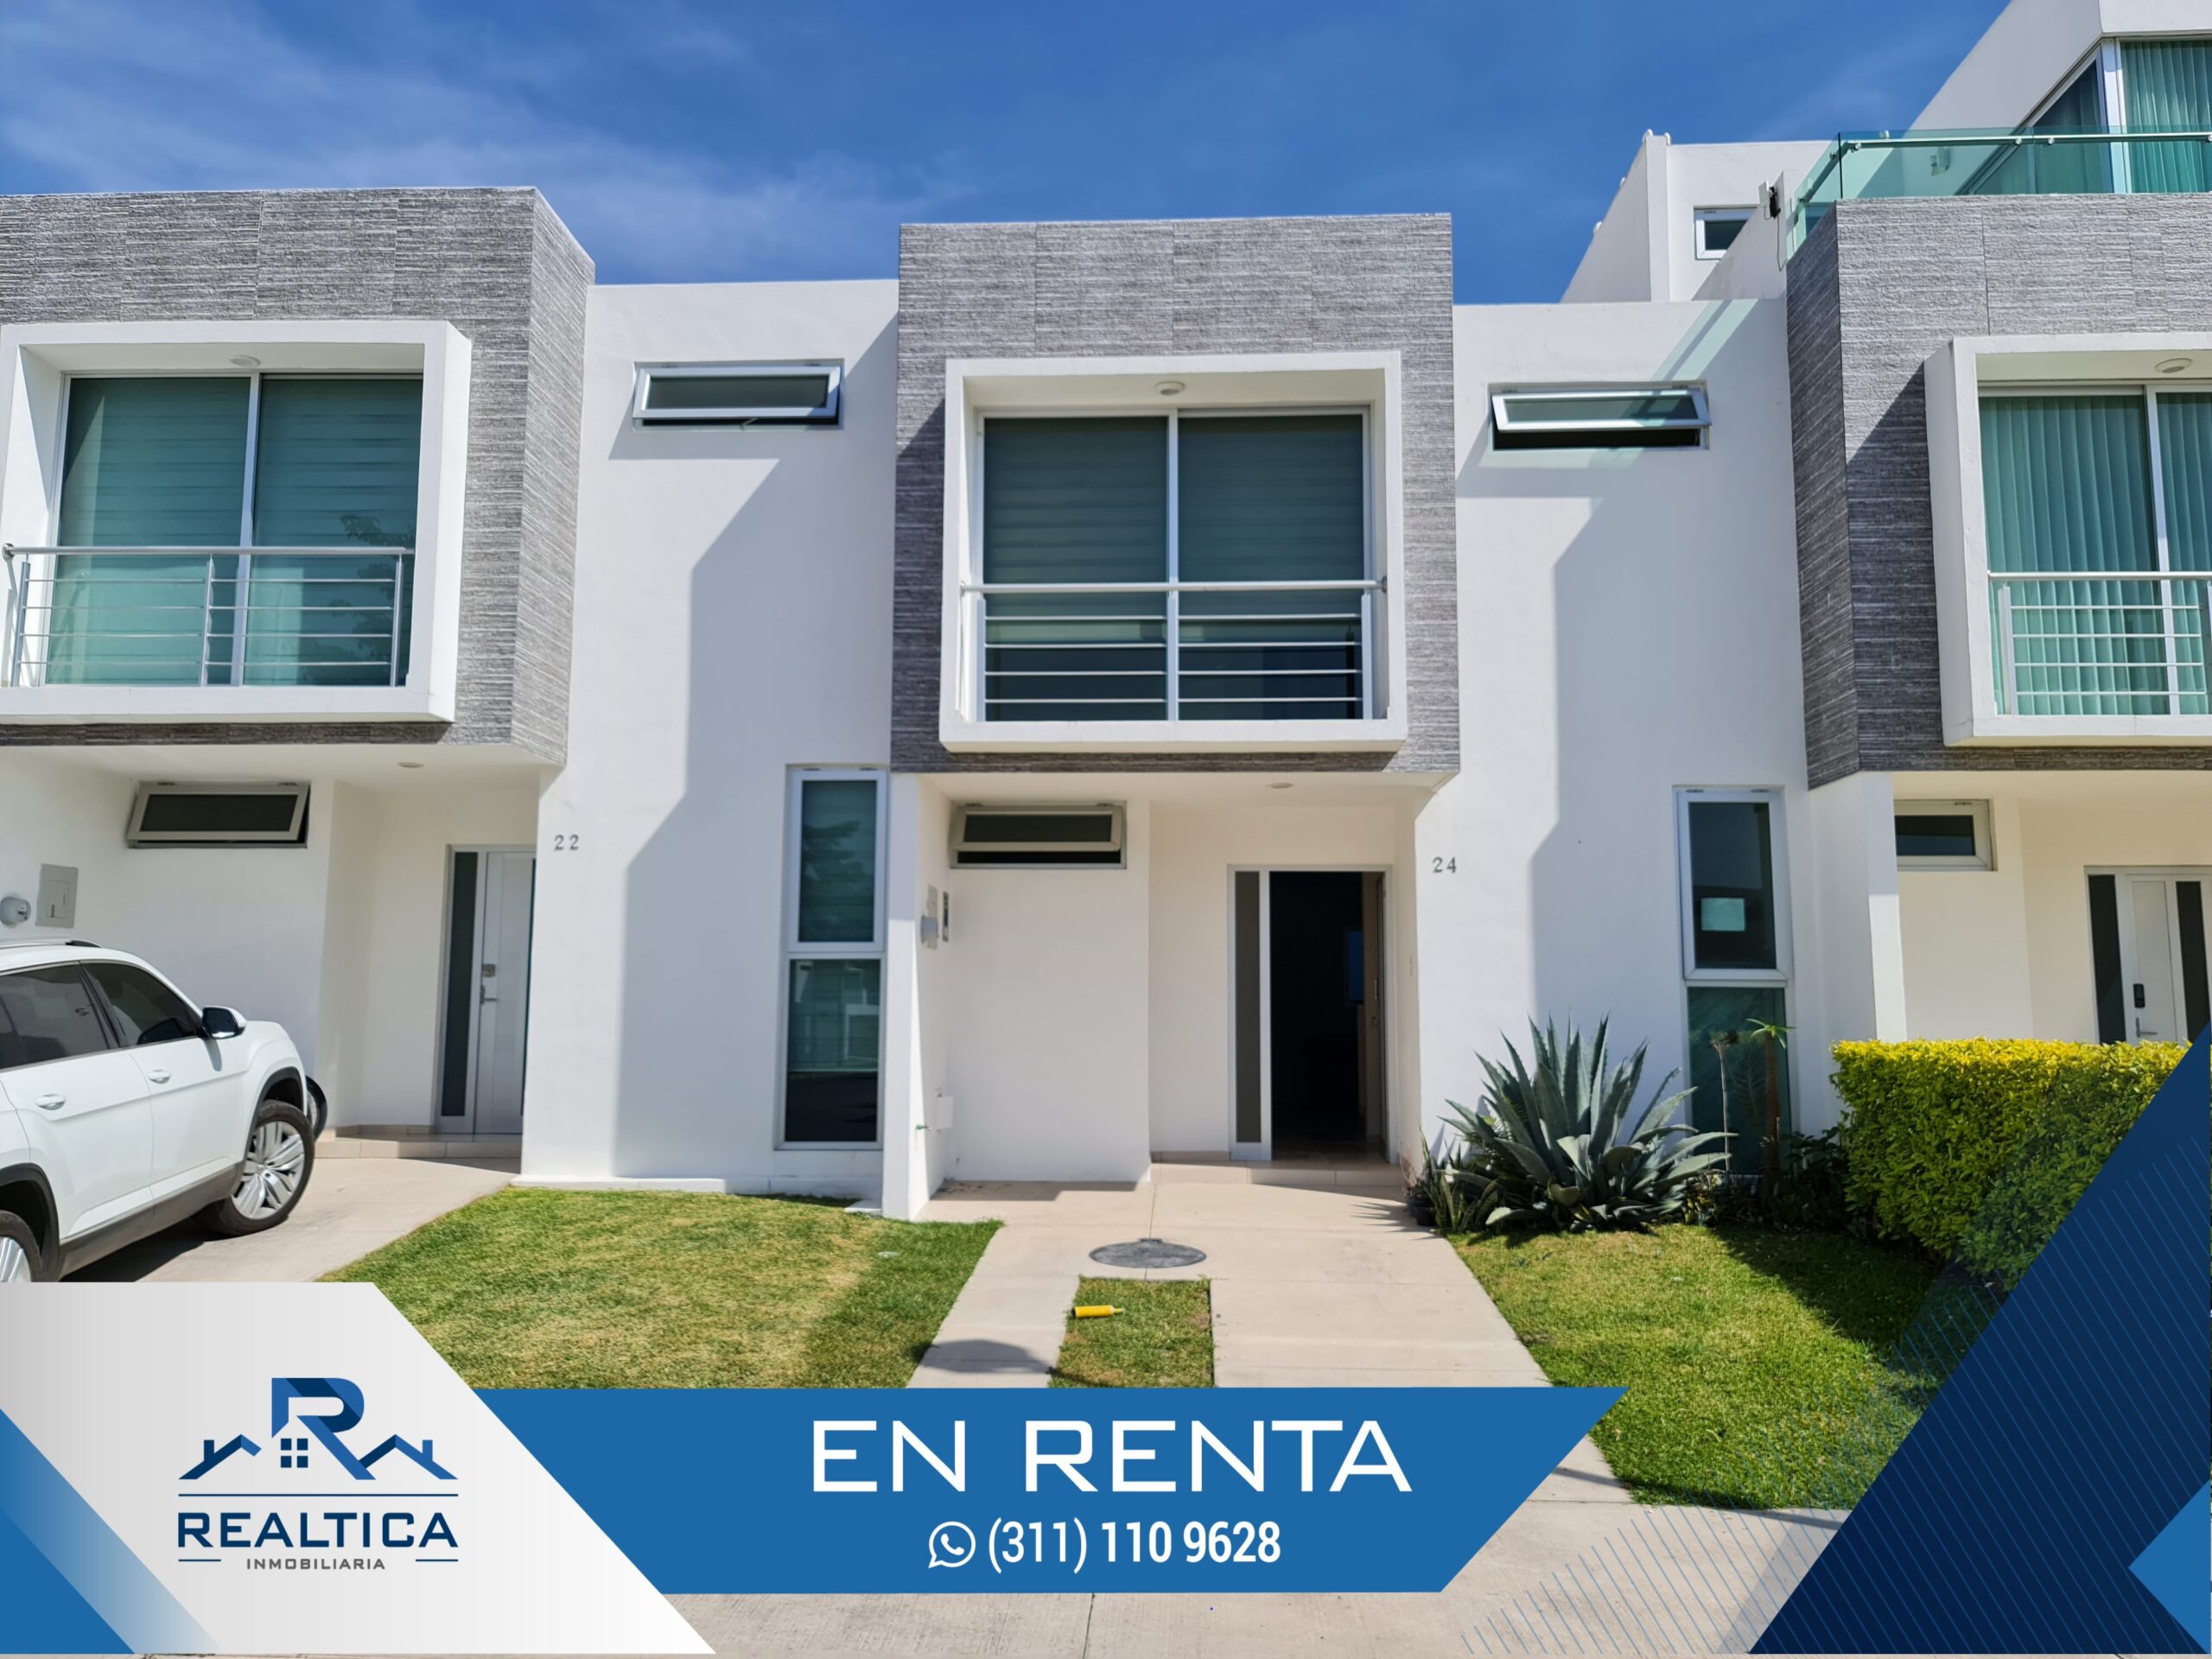 Realtica – Casa en Renta, Bonaterra